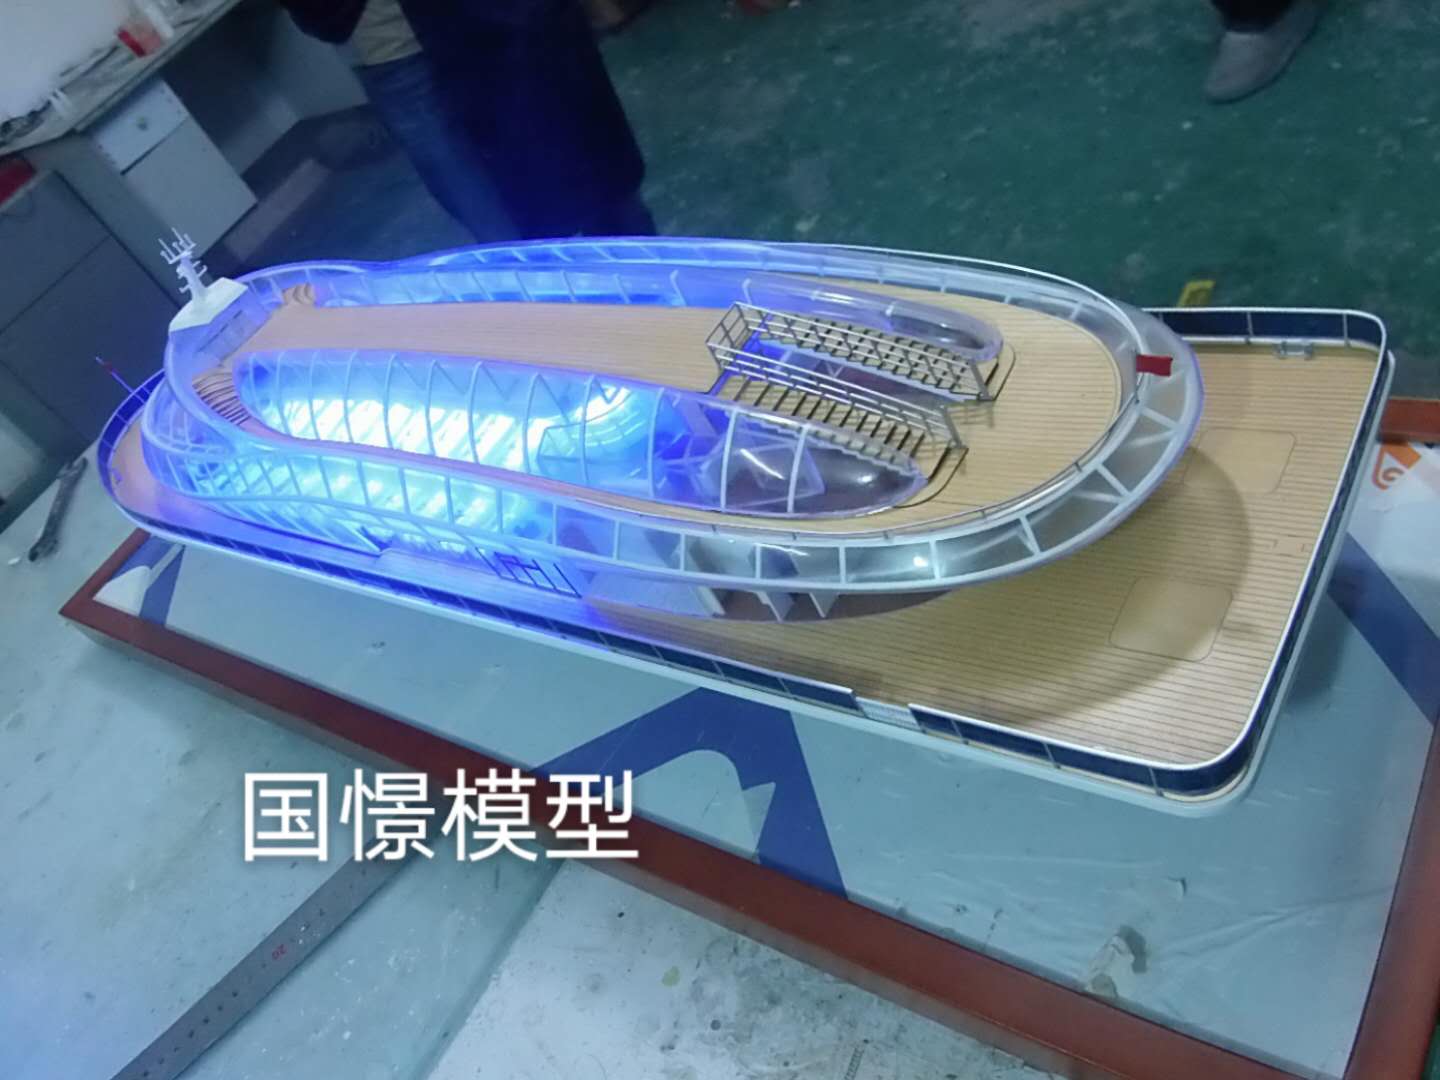 红河县船舶模型